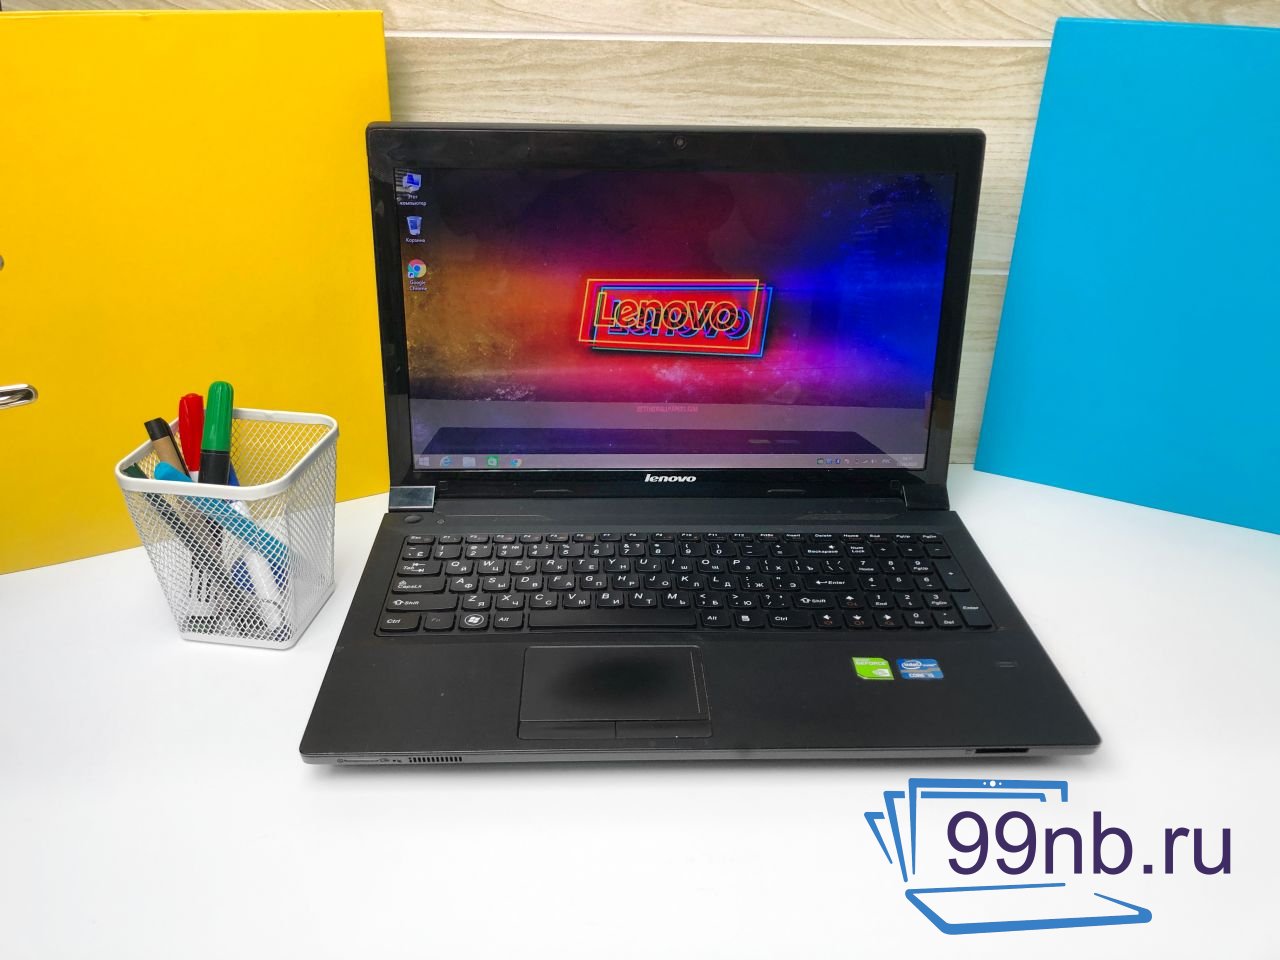  Ноутбук Lenovo Ideapad для работы и учебы+гарантия